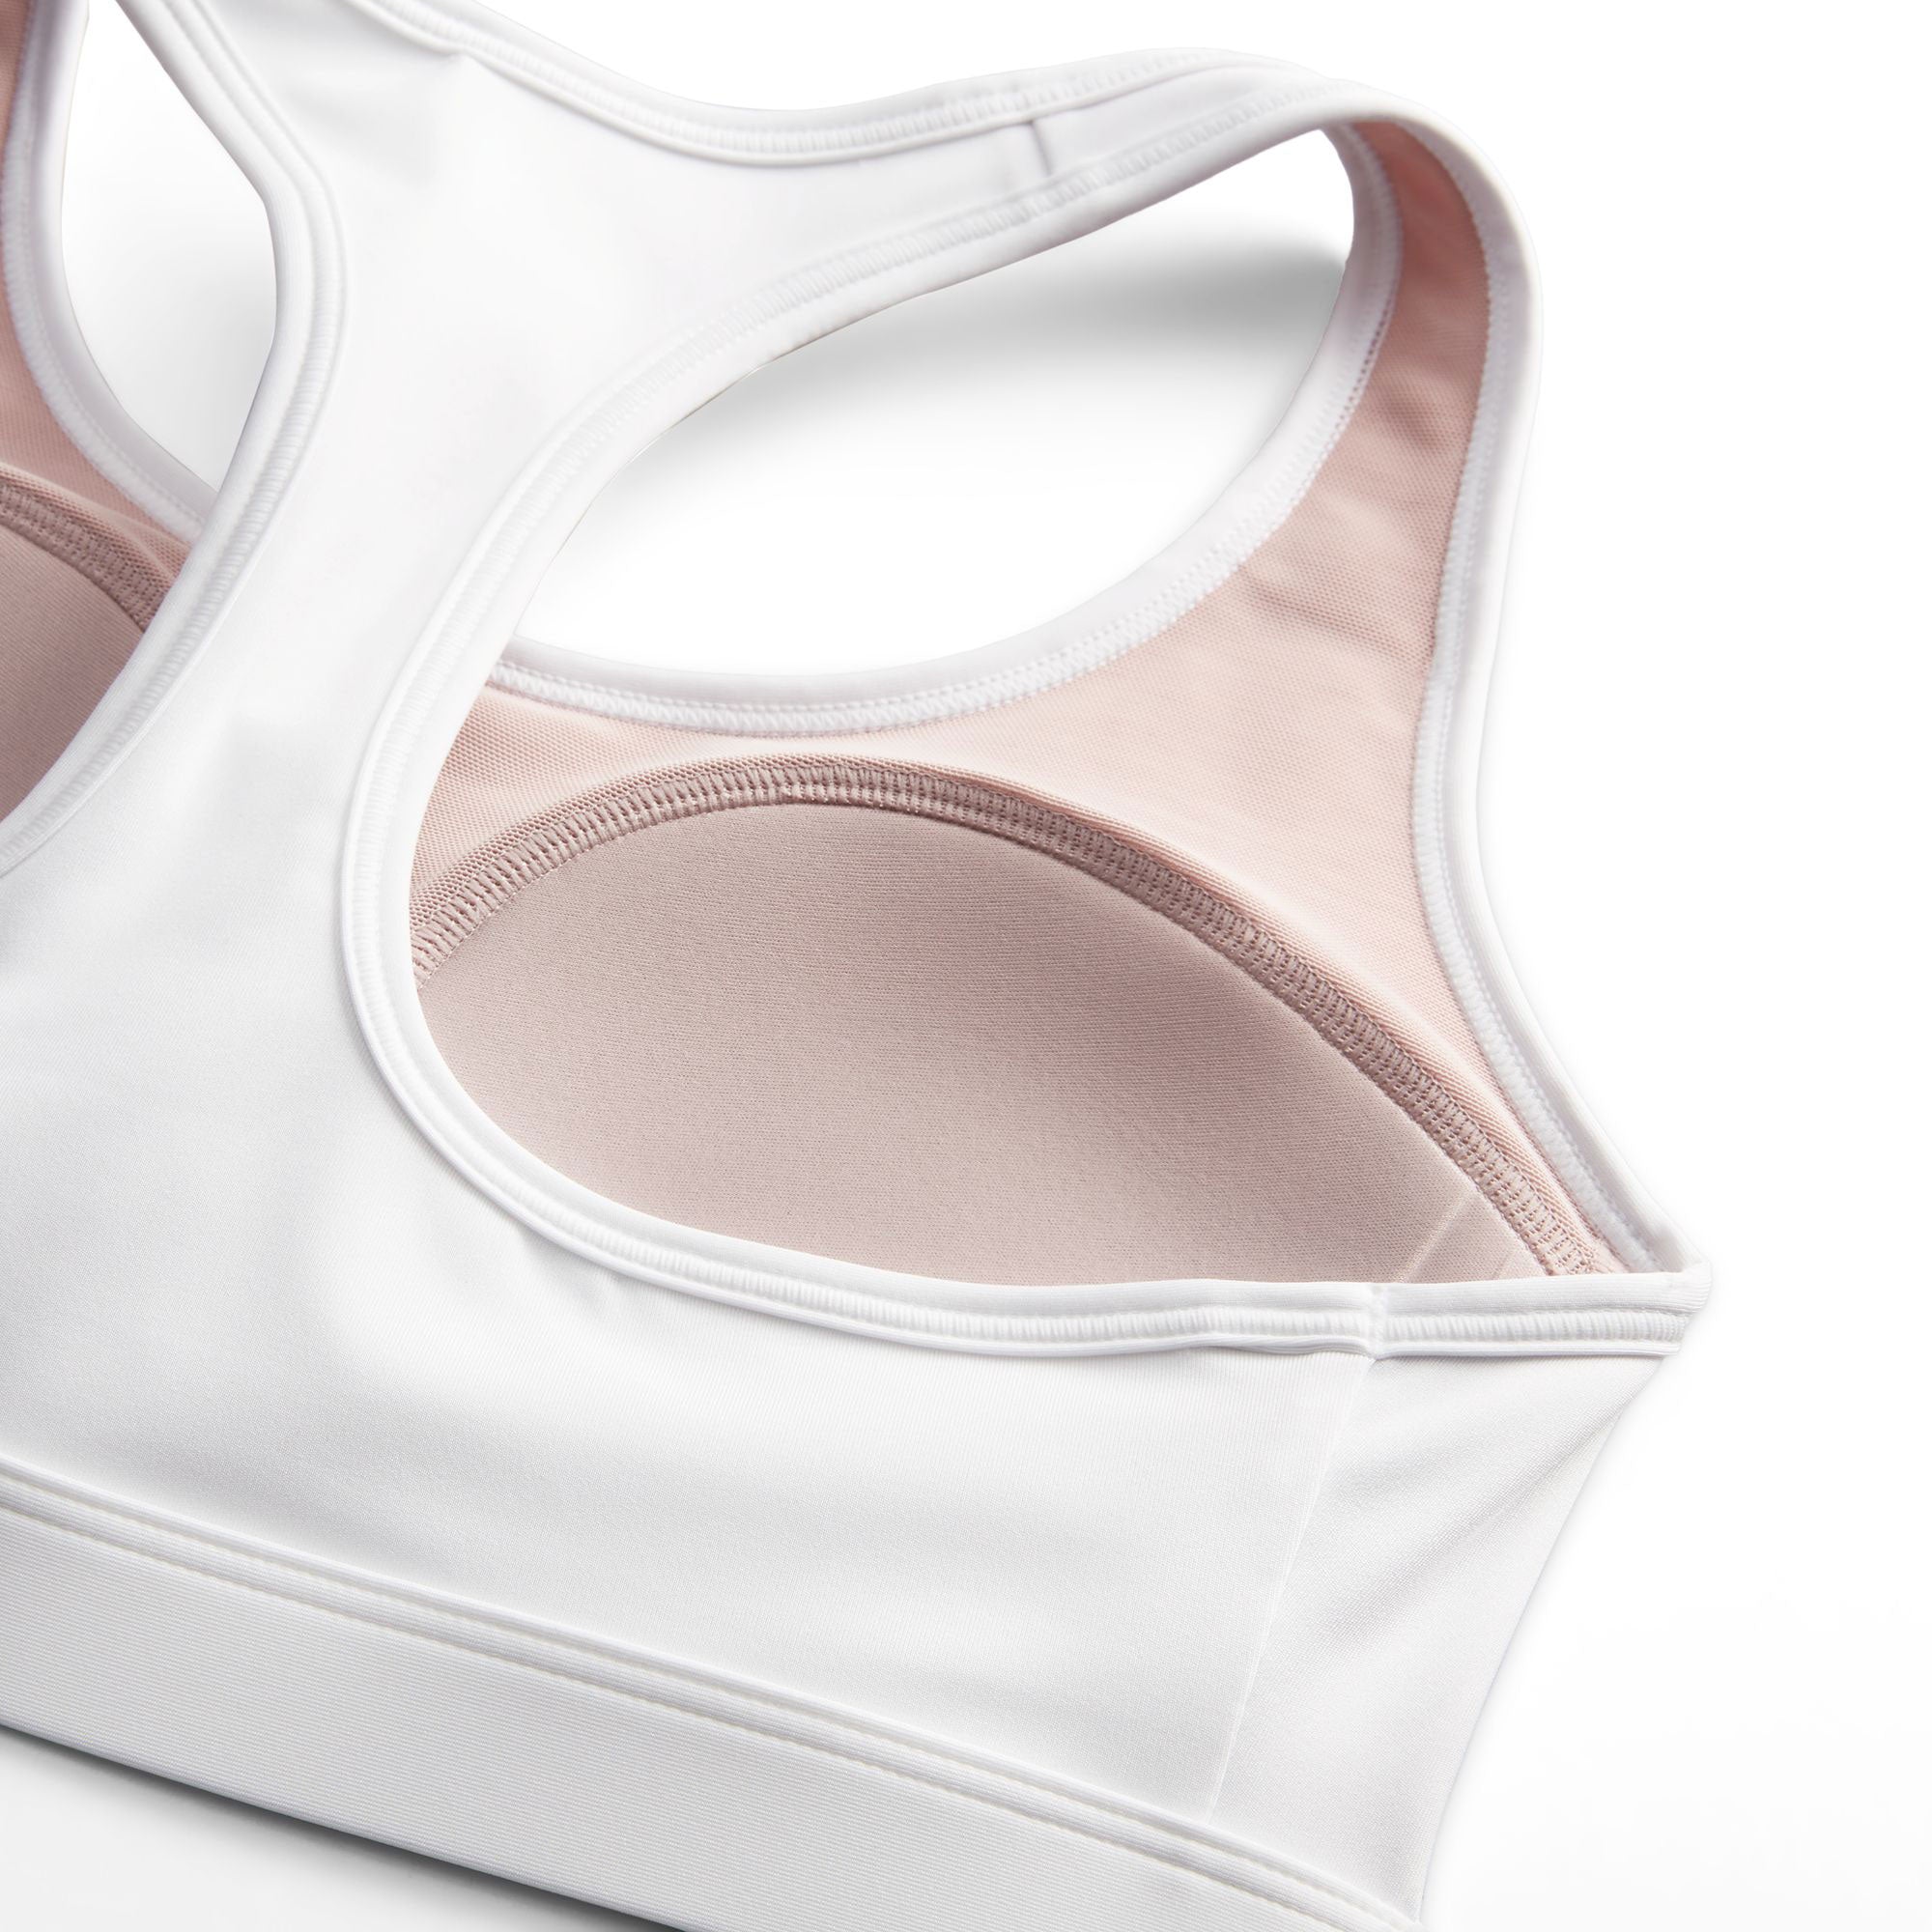 Nike Swoosh Women's Medium-Support Padded Sports Bra - White (4)